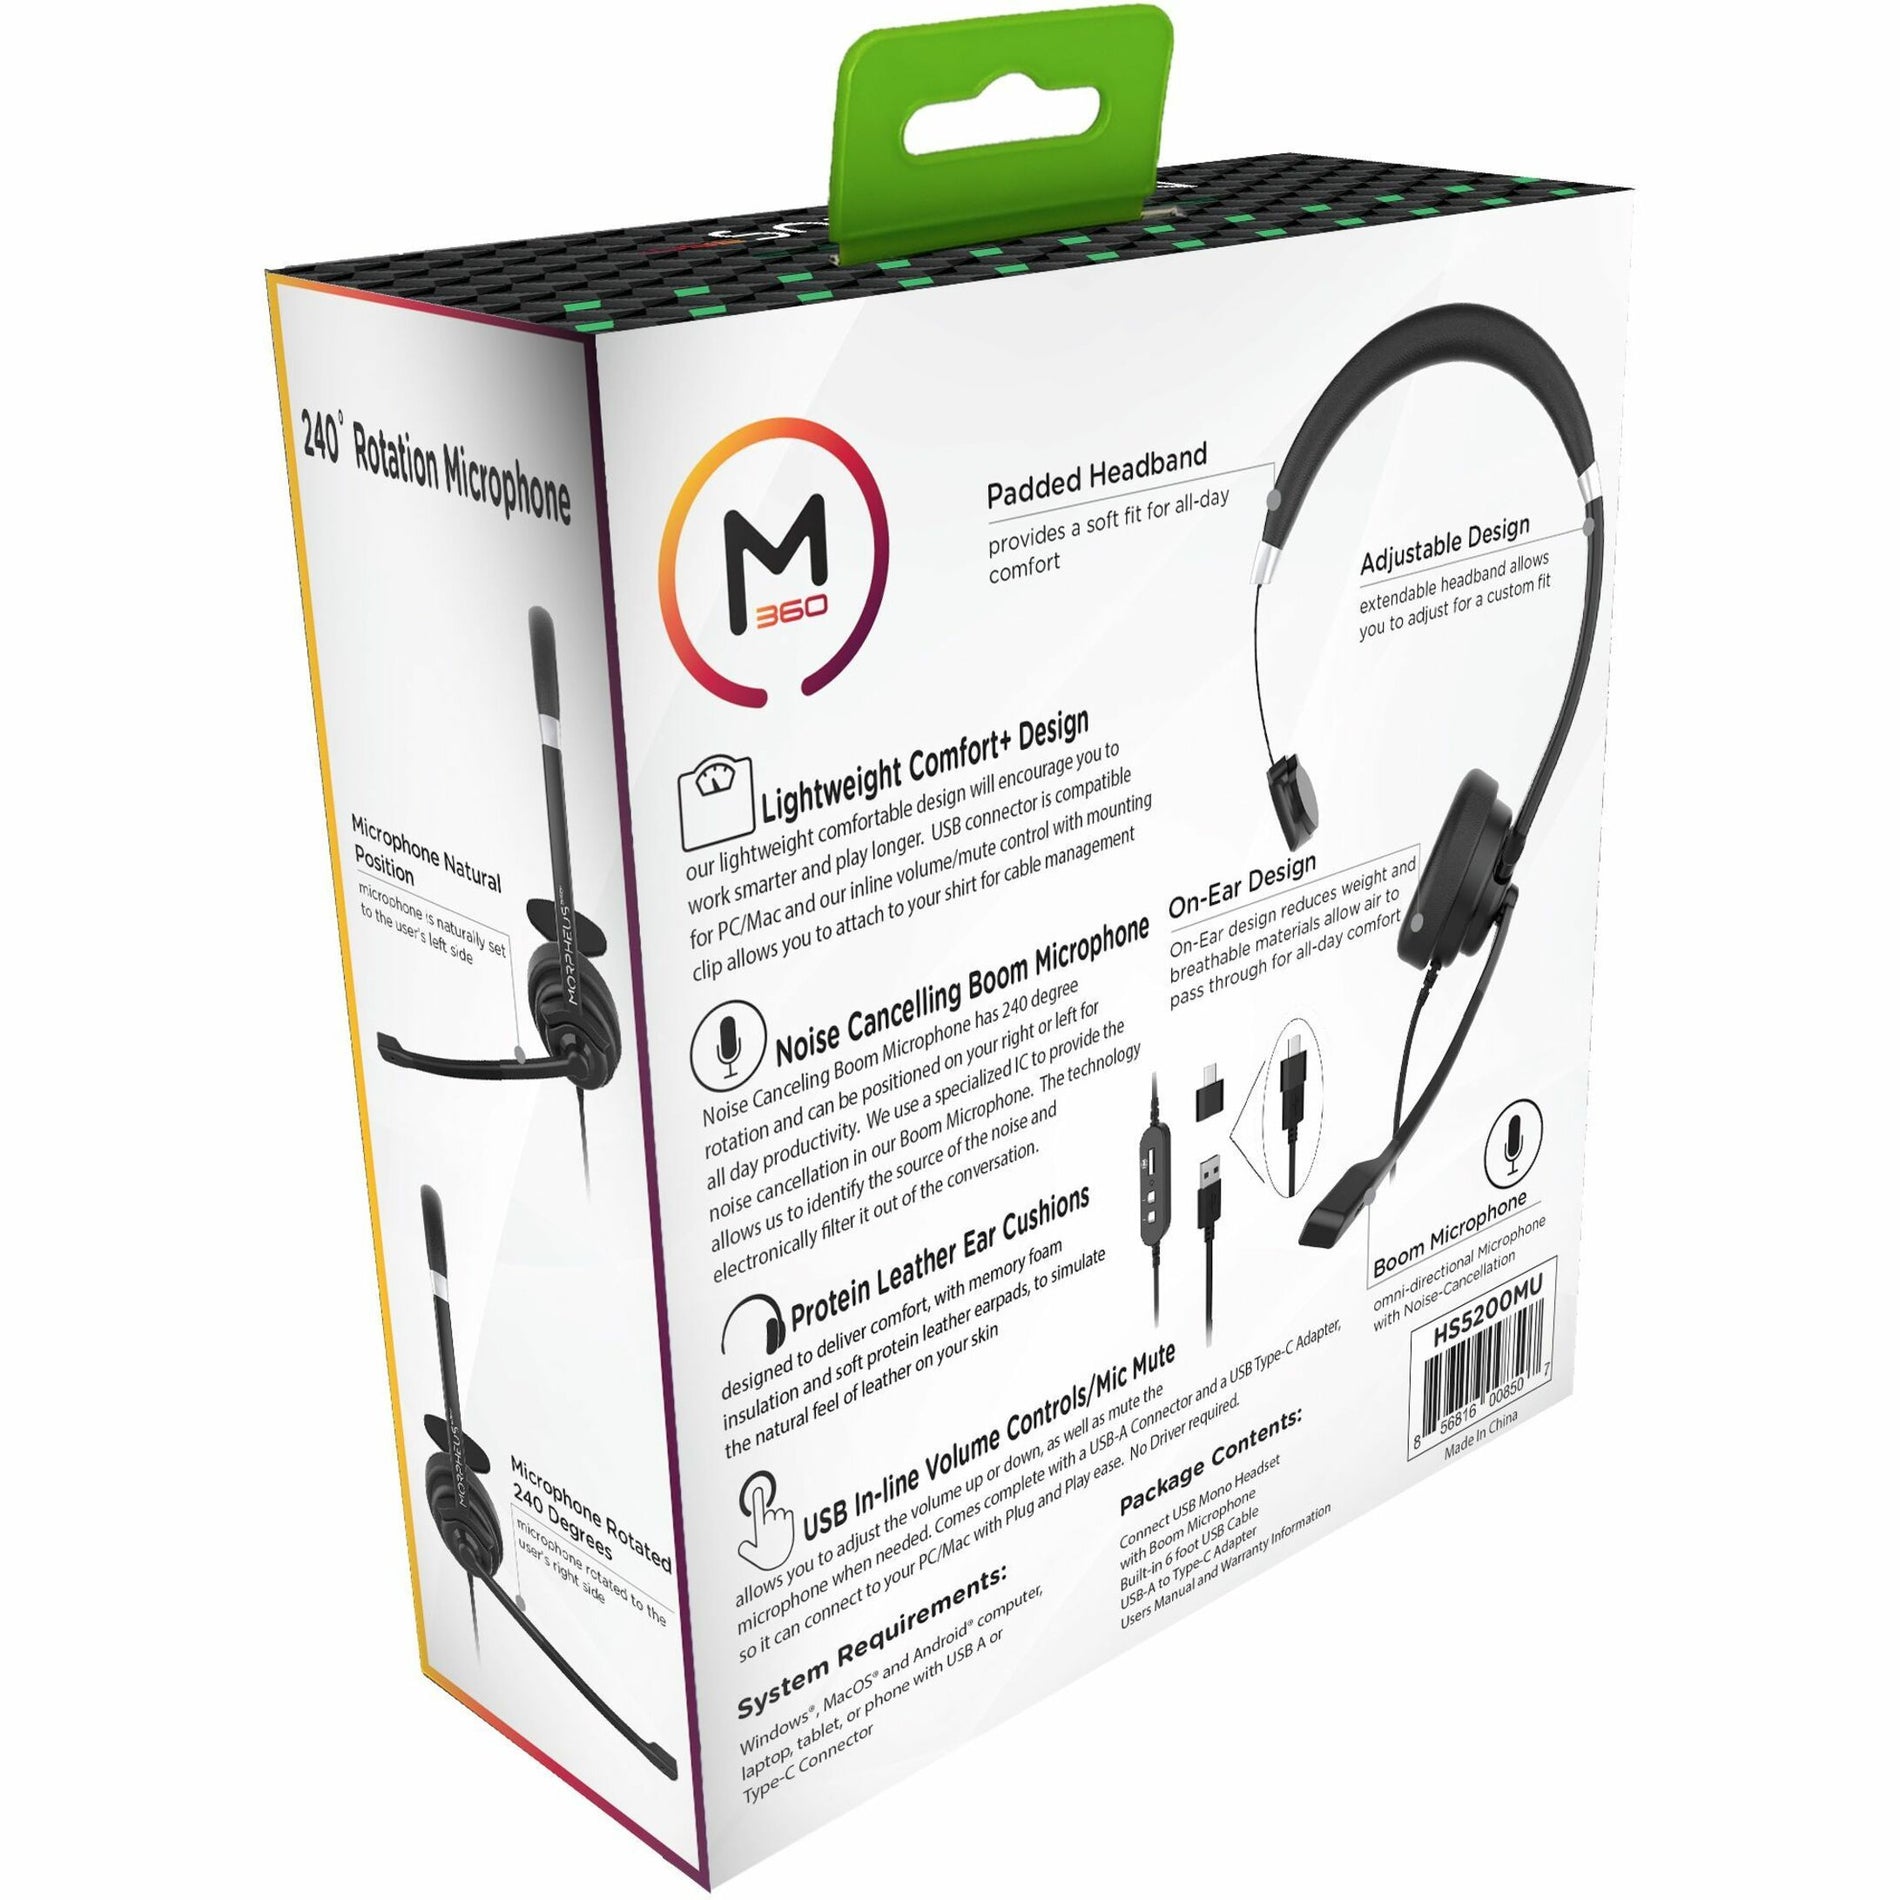 Morpheus 360 HS5200MU Cuffia USB Mono con Microfono a Braccio Confortevole Plug and Play Leggera